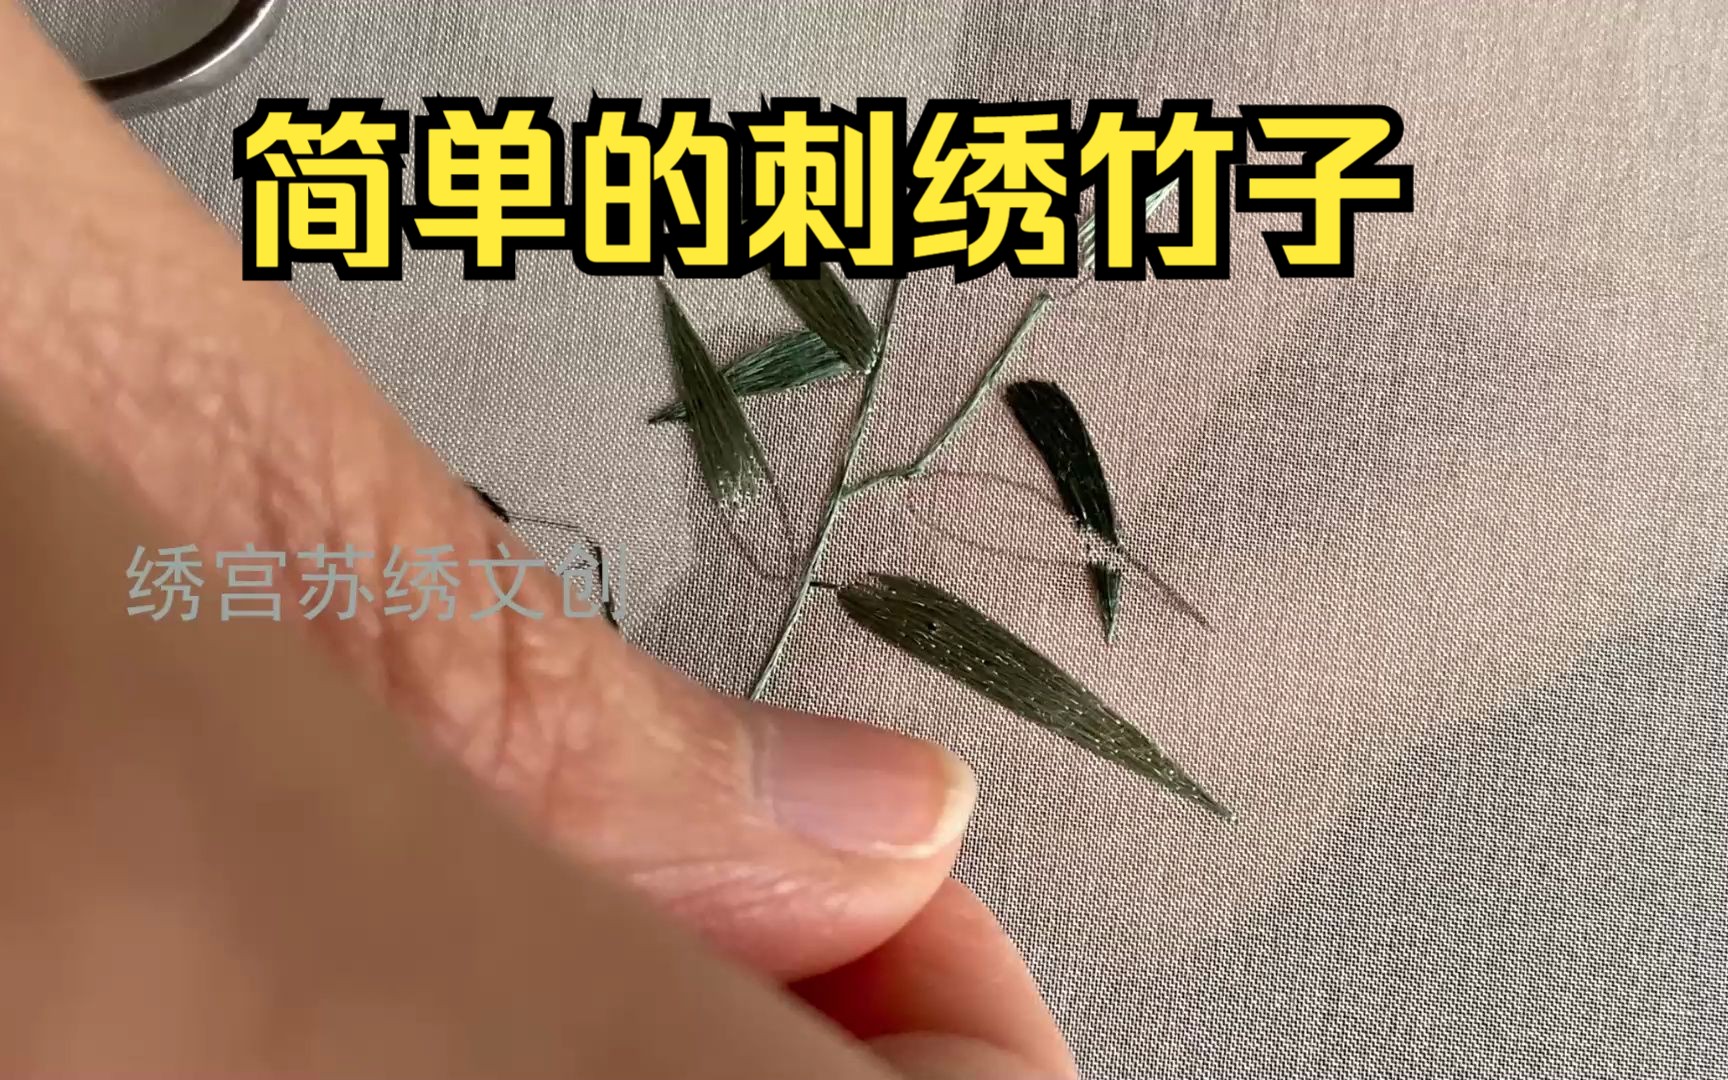 竹子刺绣 针法图片